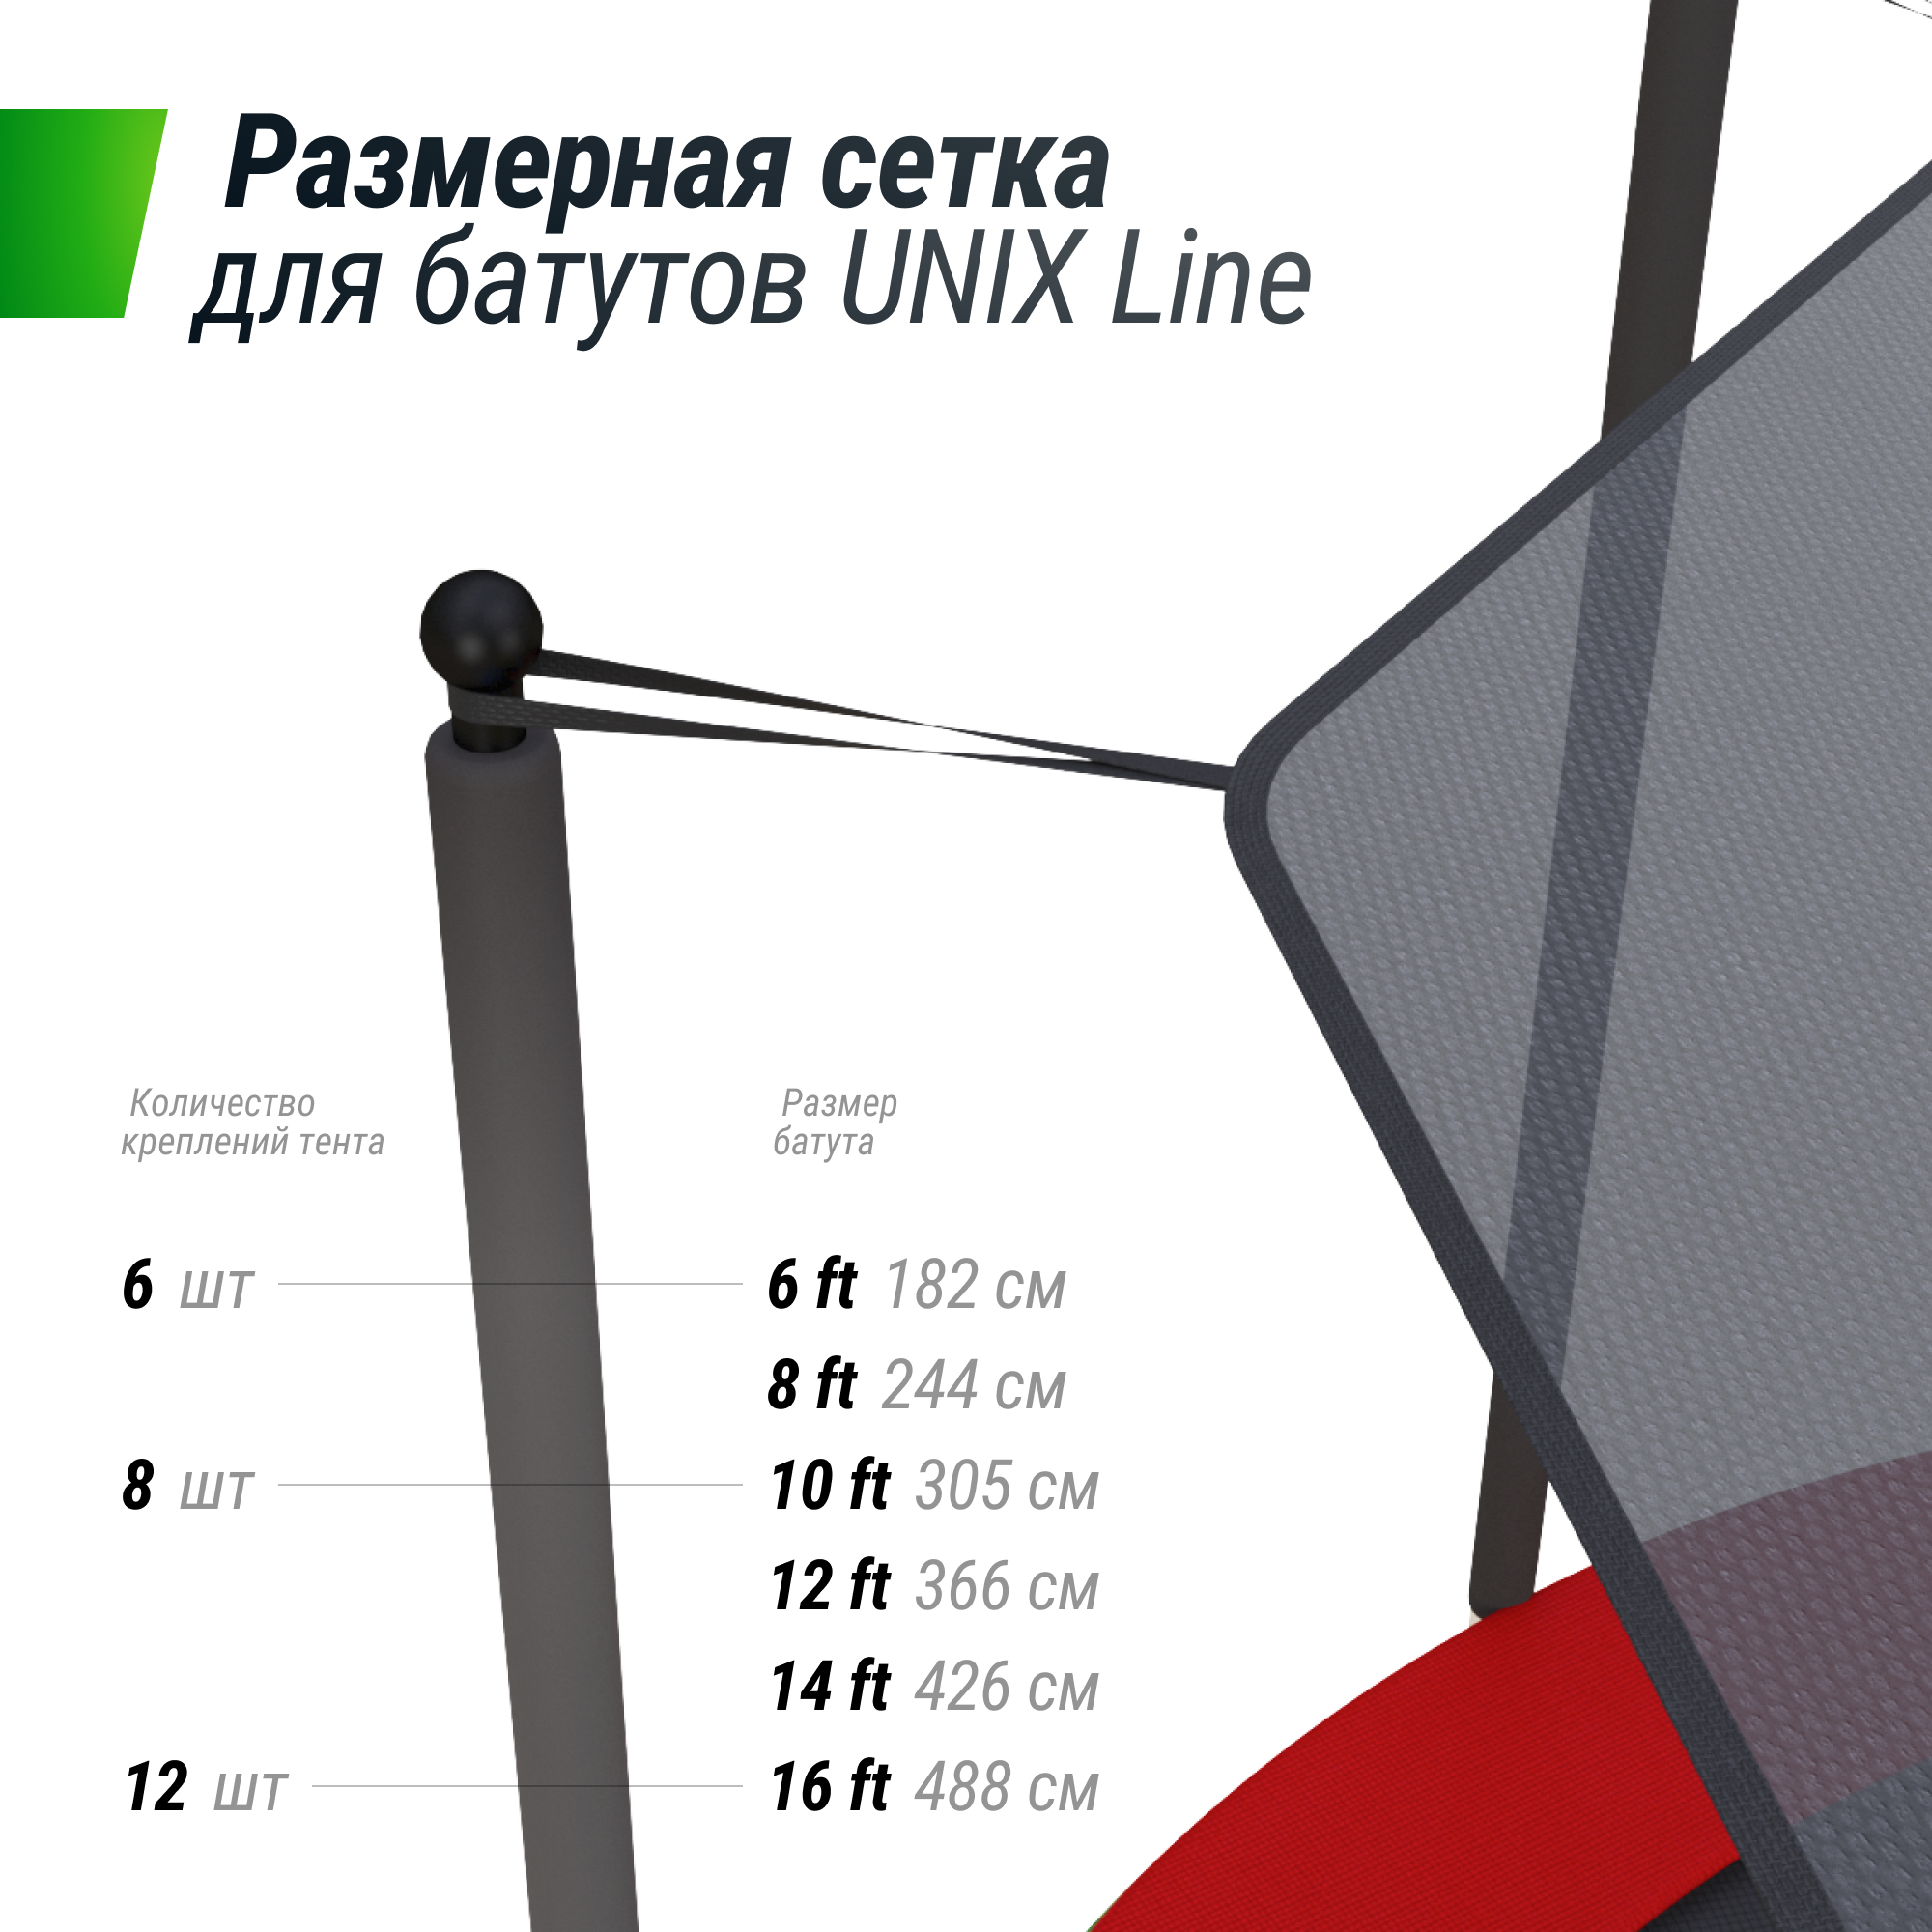 Солнцезащитный тент UNIX Line 305 см (10 ft)